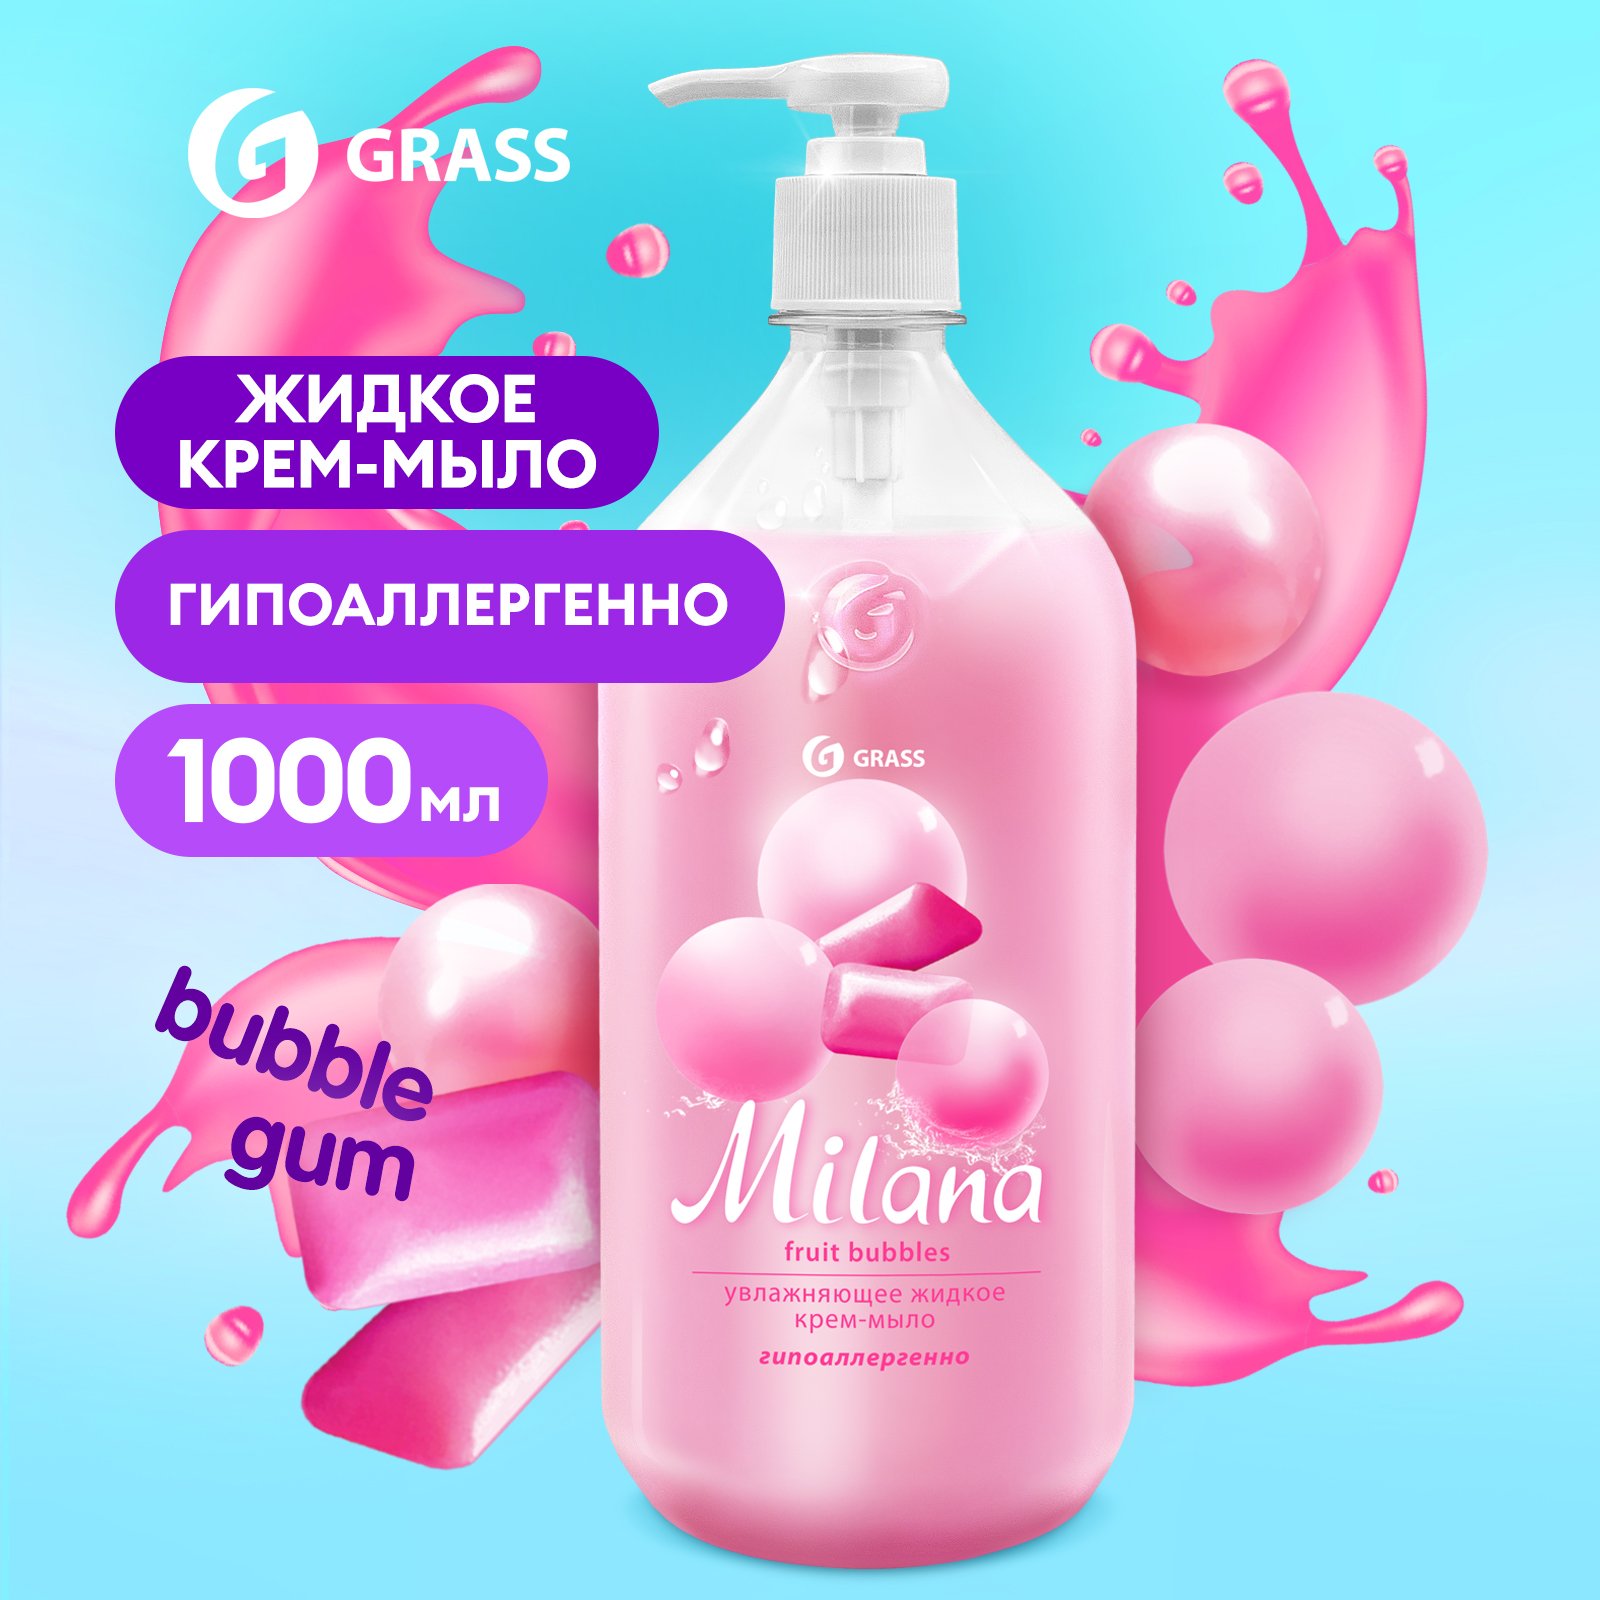 Мыло жидкое для рук Grass Milana Fruit Bubbles туалетное, густое, гипоаллергенное 1 л жидкое мыло для рук grass milana антибактериальное 1л